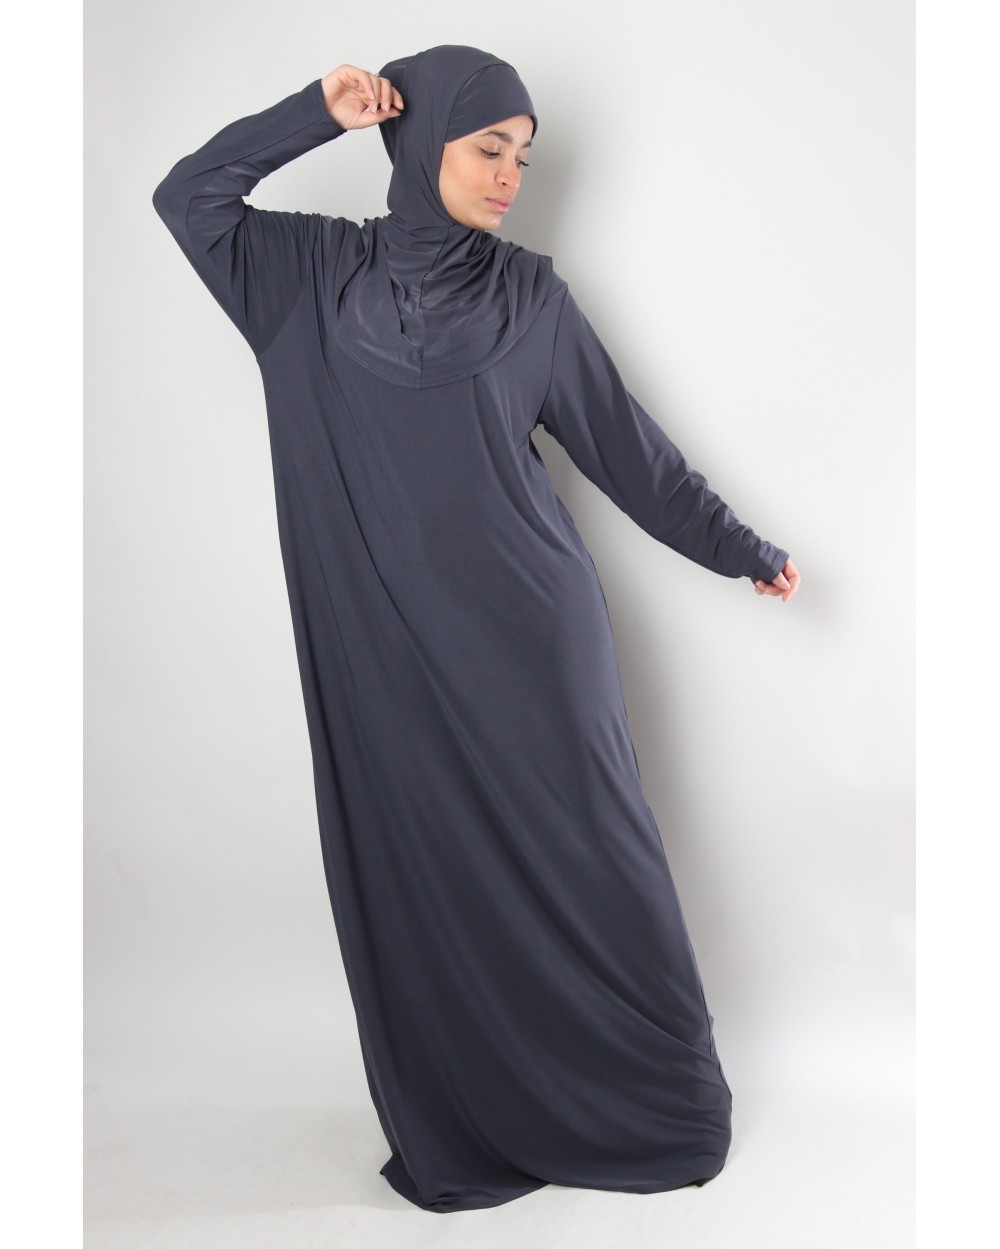 Rahama prayer dress hijab